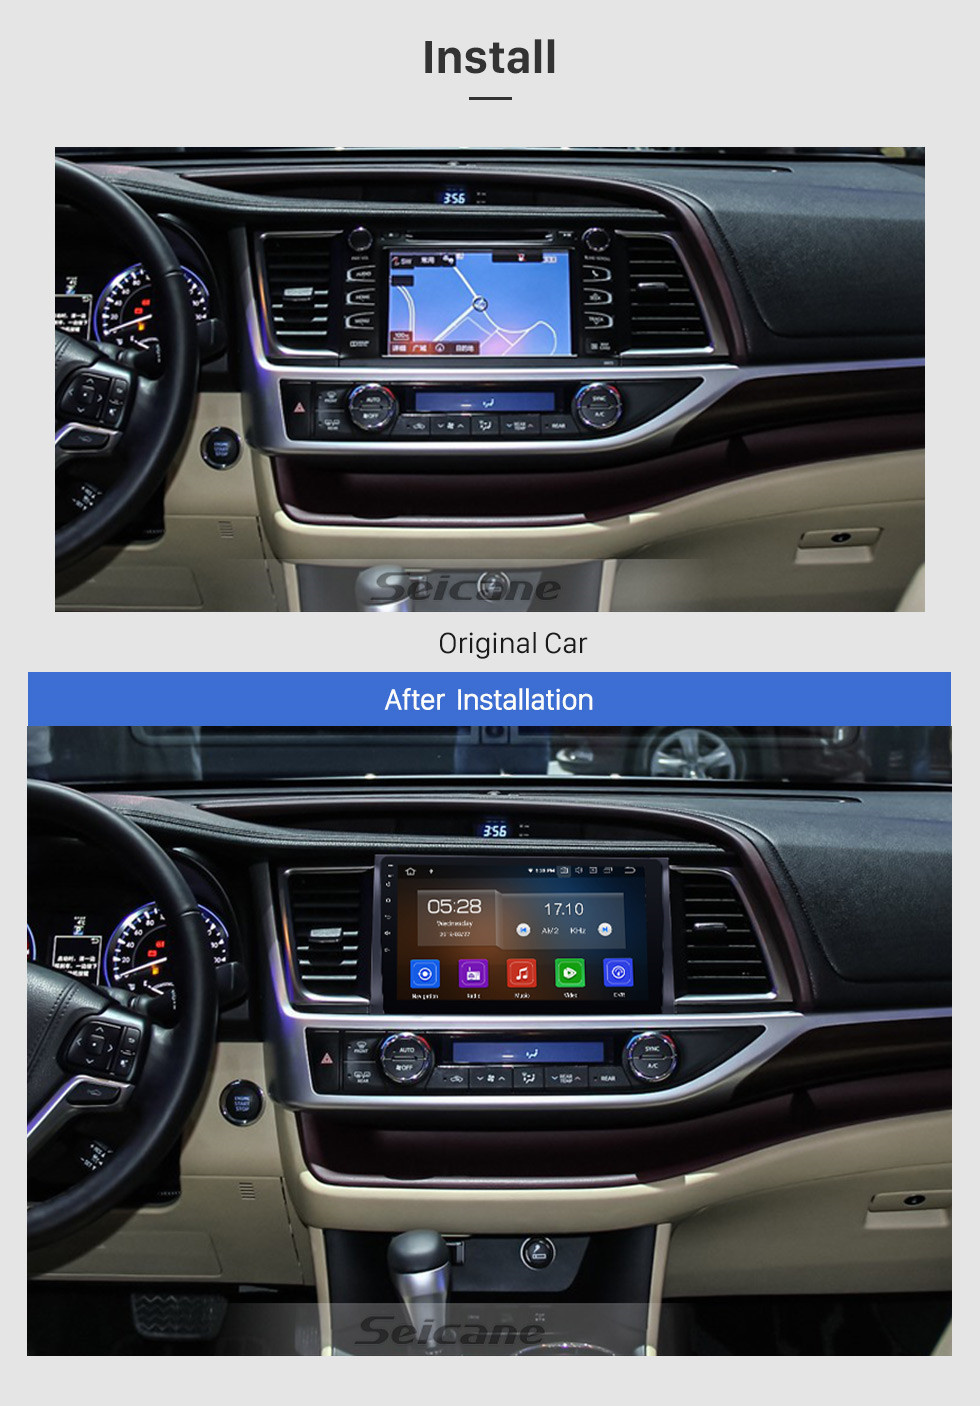 Seicane 10,1 pouces 2015 Toyota Highlander Android 11.0 Radio HD à écran tactile Radio Système de navigation GPS avec Bluetooth TPMS DVR OBD II Caméra arrière AUX USB 3G WiFi Commande au volant Vidéo